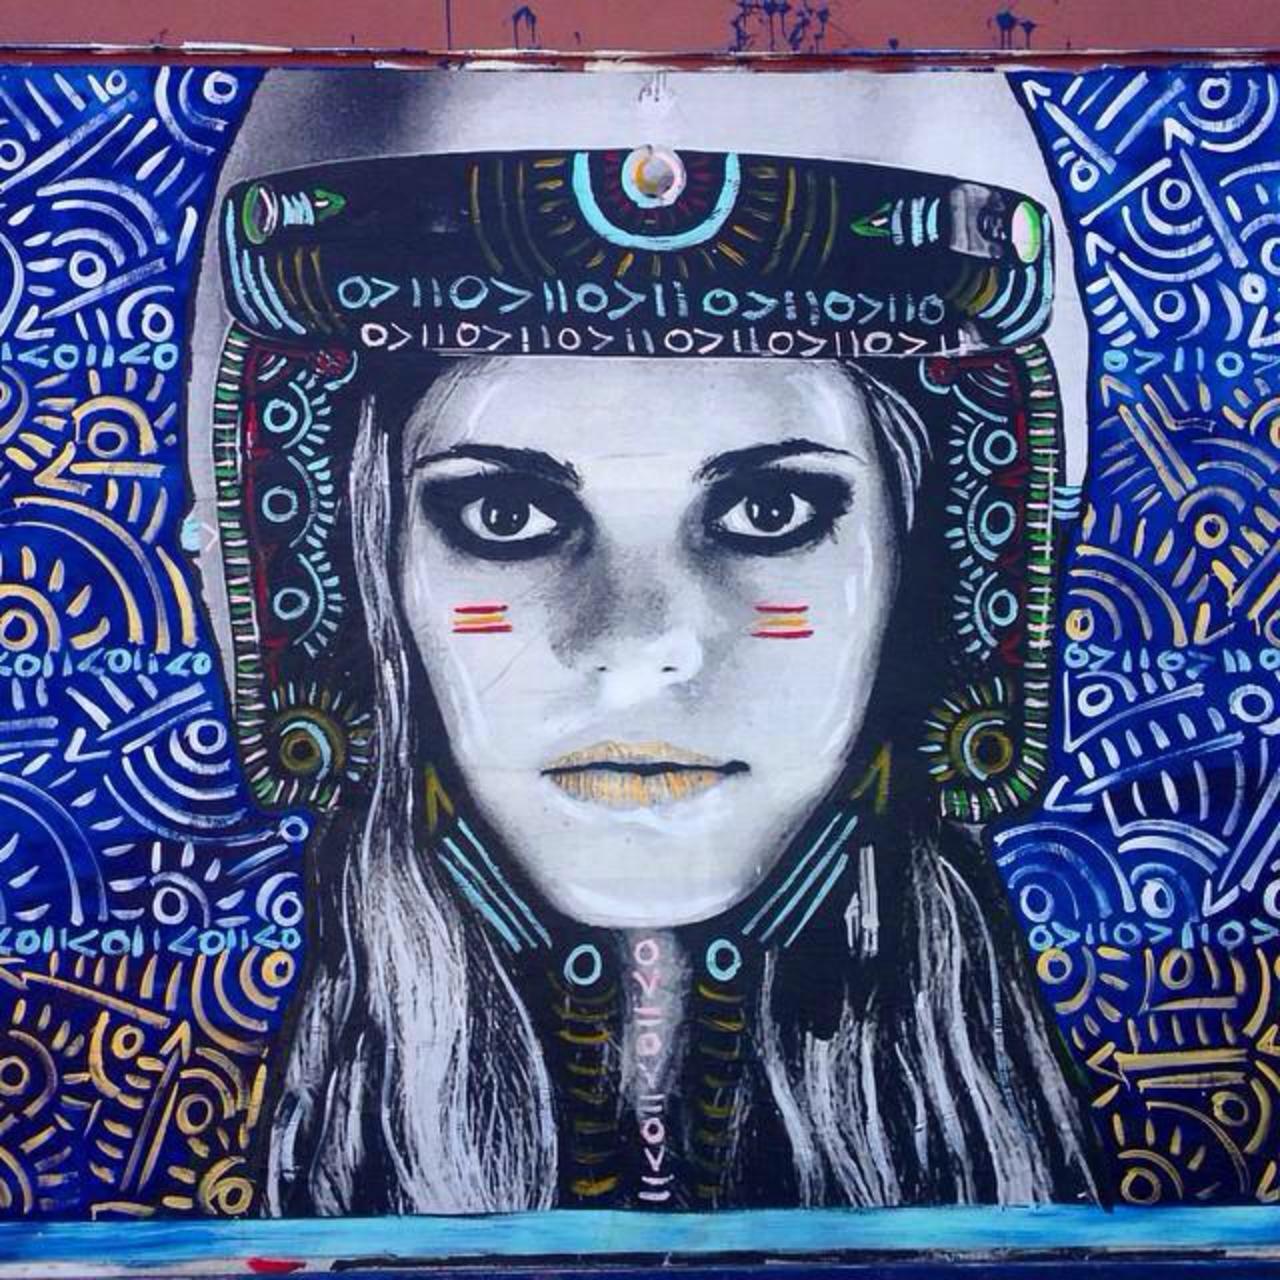 Street Art by Kelcey Fisher in LA
Photo by djcatnap

#art #arte #graffiti #streetart http://t.co/8UwNo2BMew